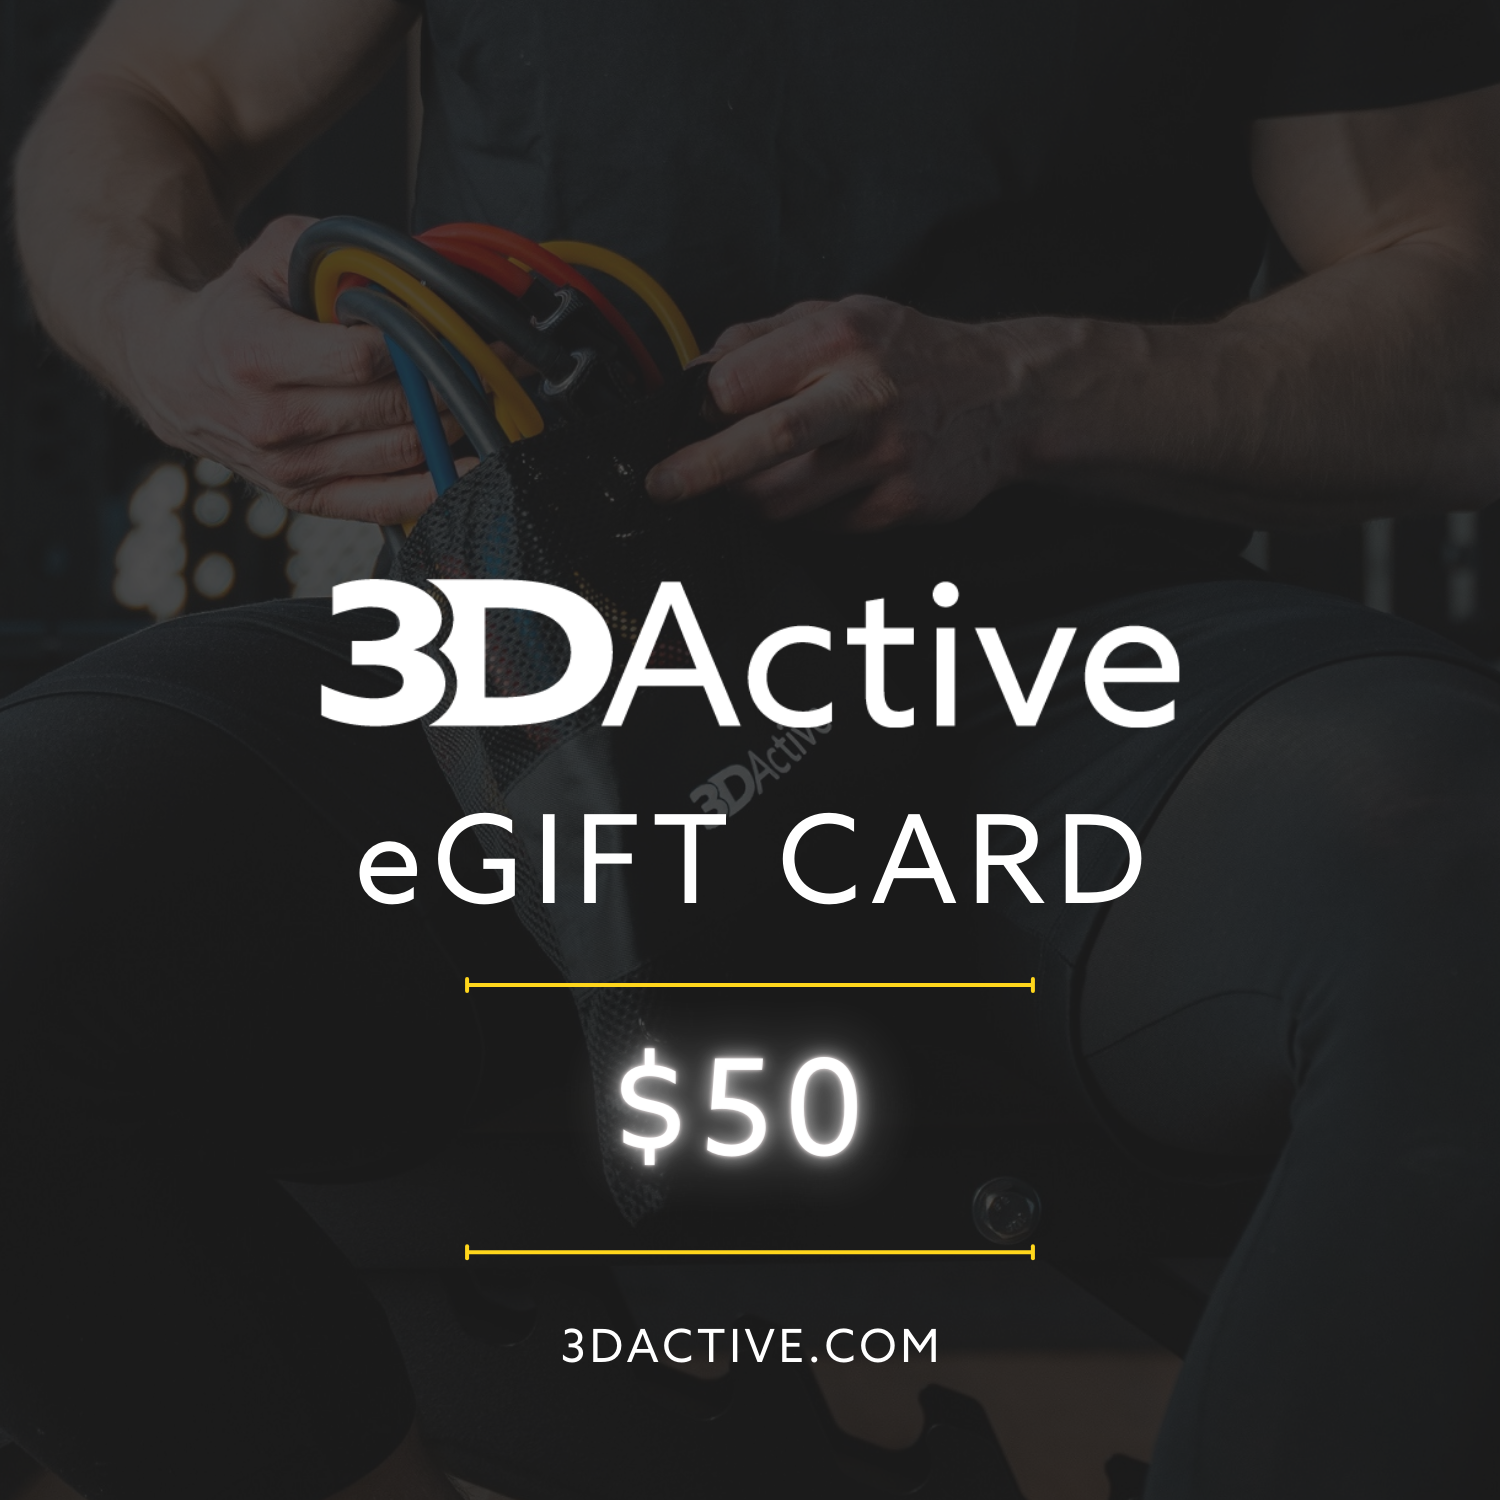 3DActive eGift Card